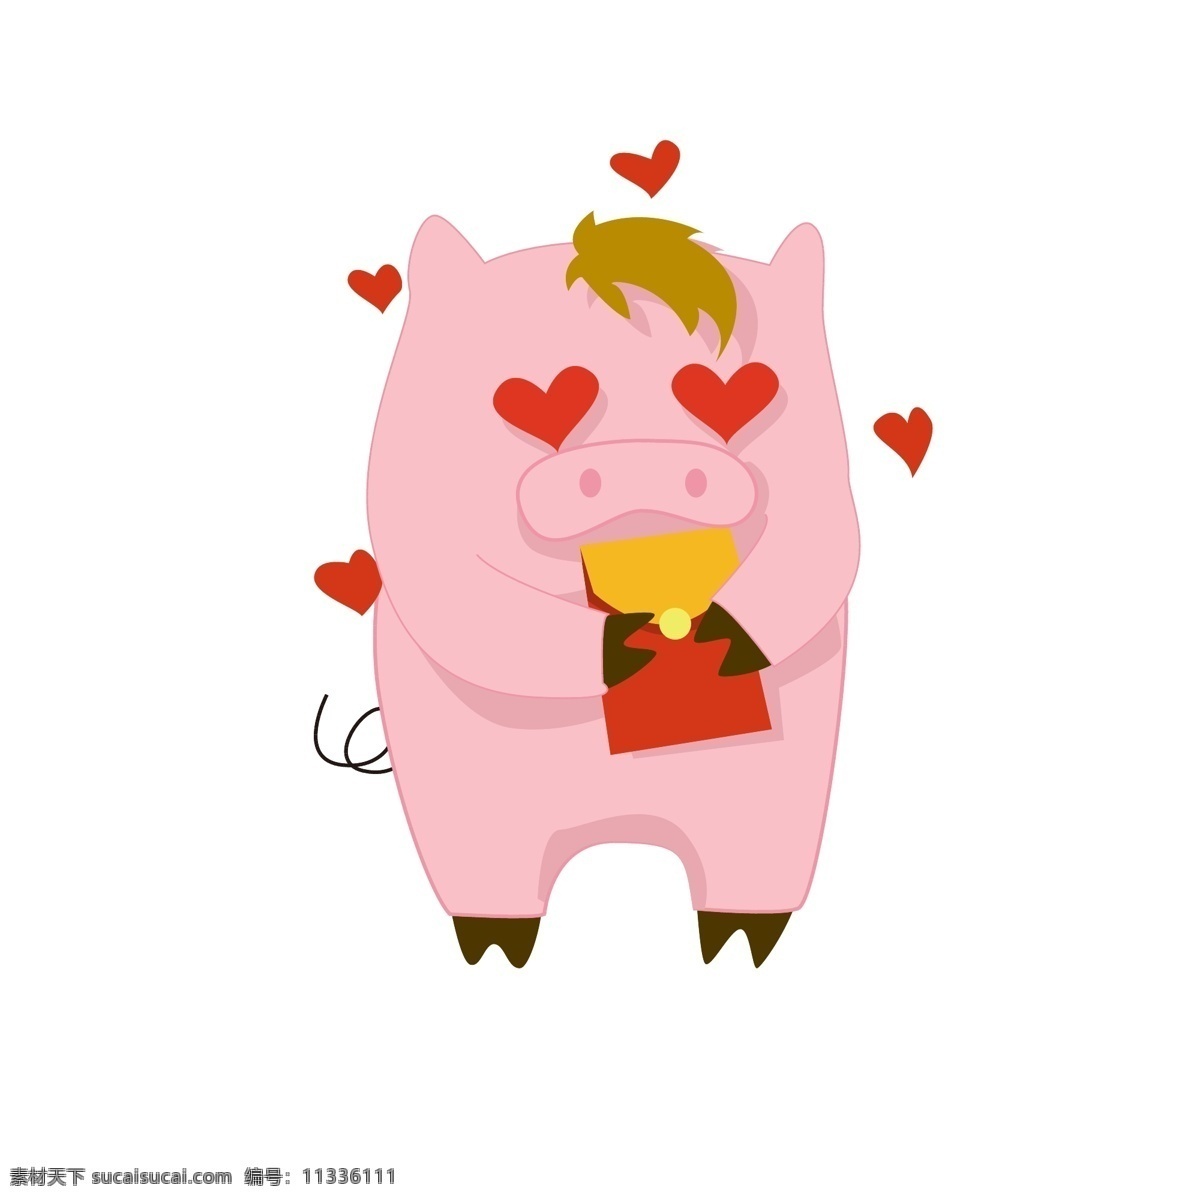 简约 猪年 卡通 猪 形象 表情 包 可爱 风格 红包 卡通猪 表情包 可爱卡通 猪元素 简约猪年 猪形象 求红包表情